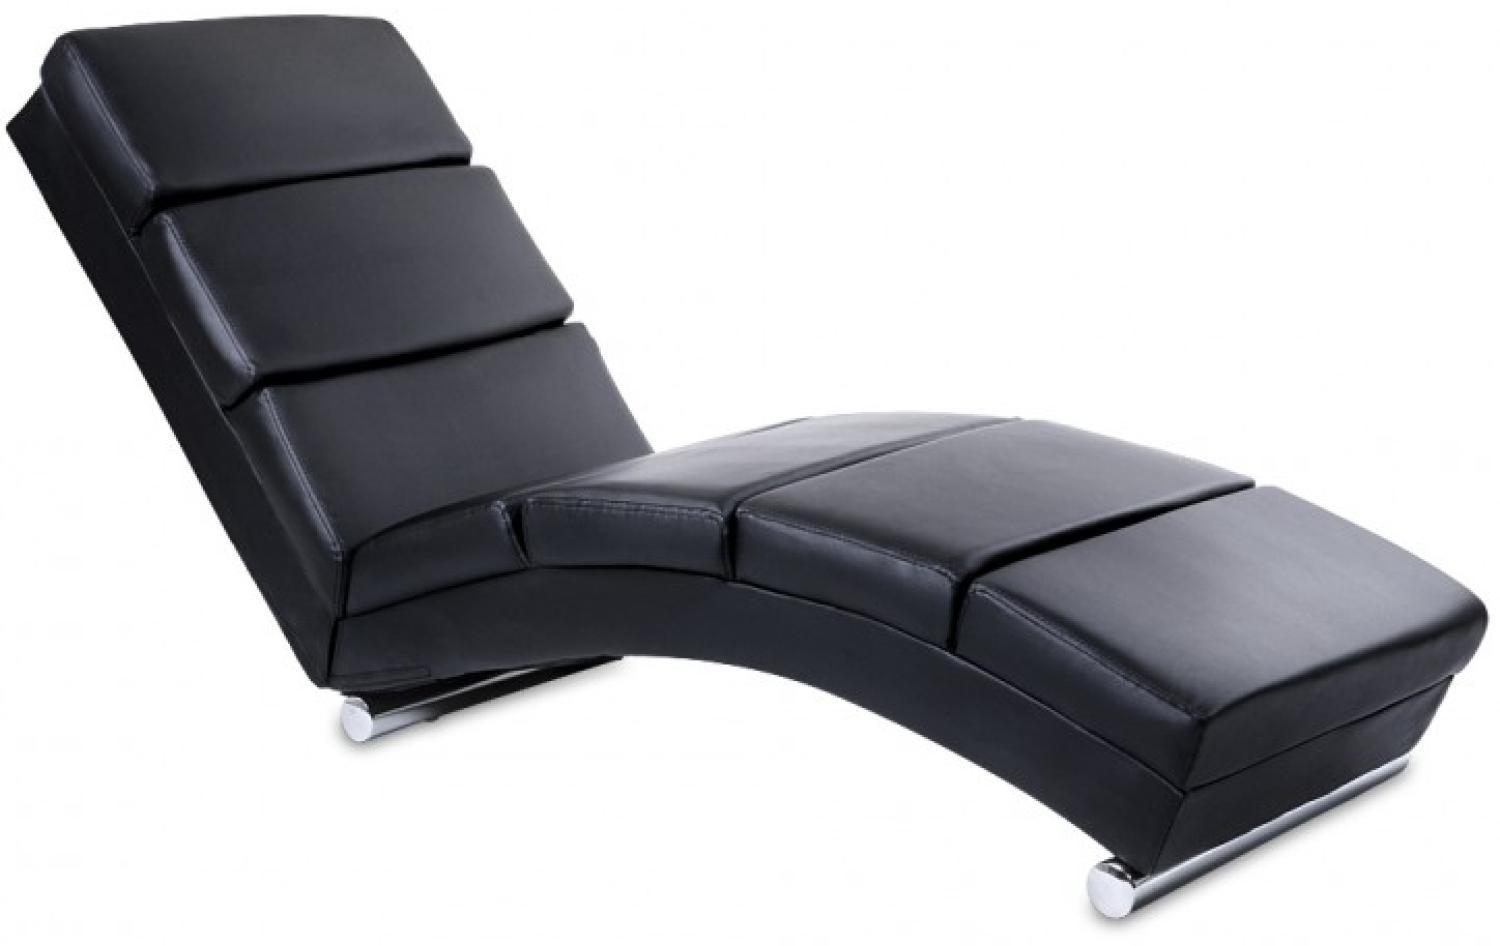 MIADOMODO® Relaxliege, ergonomisch, gepolstert, Kunstleder schwarz, 154 x 51 x 73 cm Bild 1